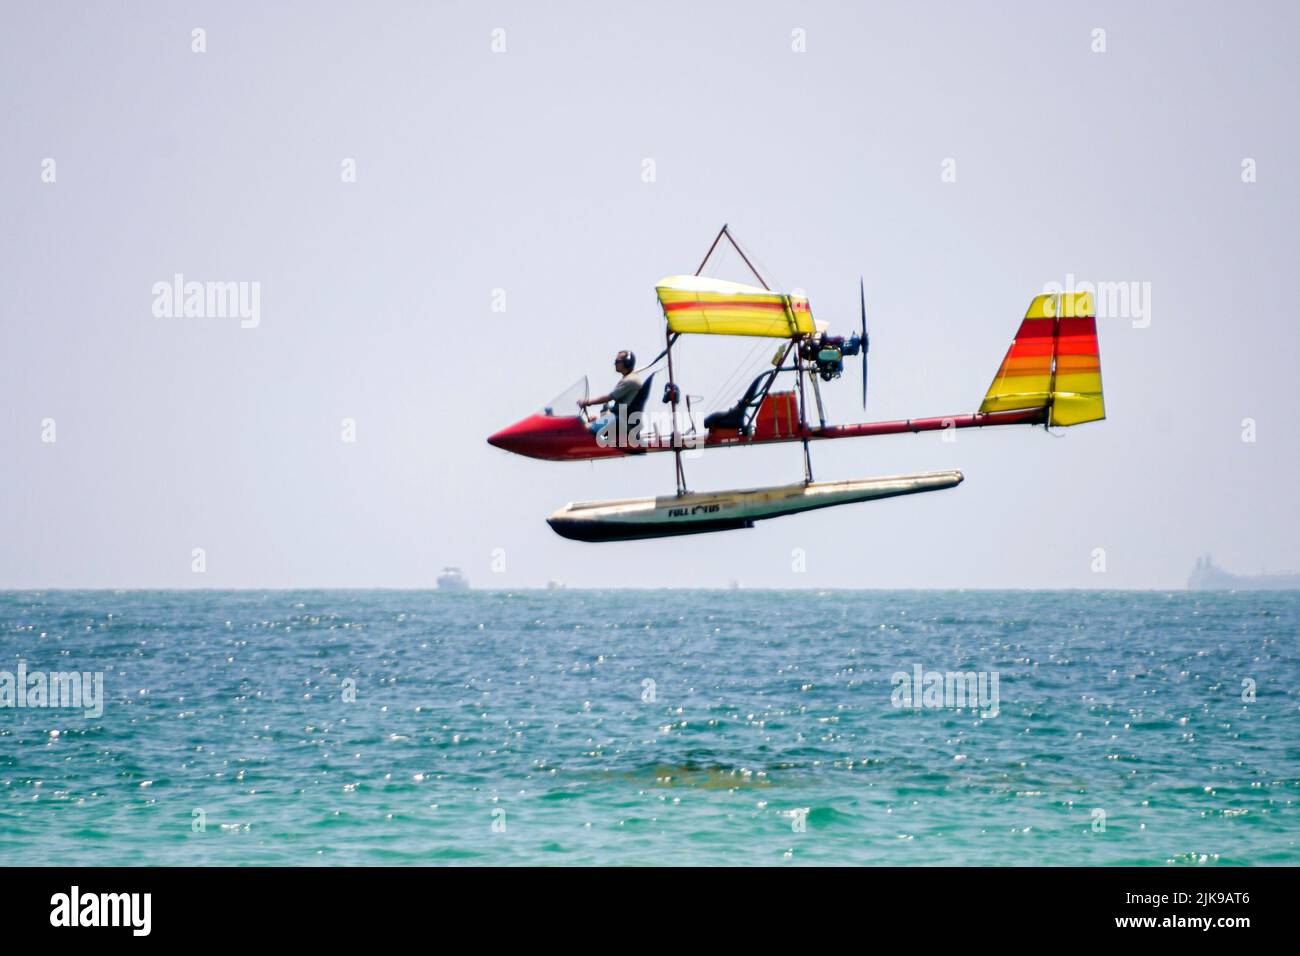 Miami Beach Florida, océan Atlantique bord de mer, avion ultraléger volant au-dessus de l'océan pilote, scène dans une photo Banque D'Images